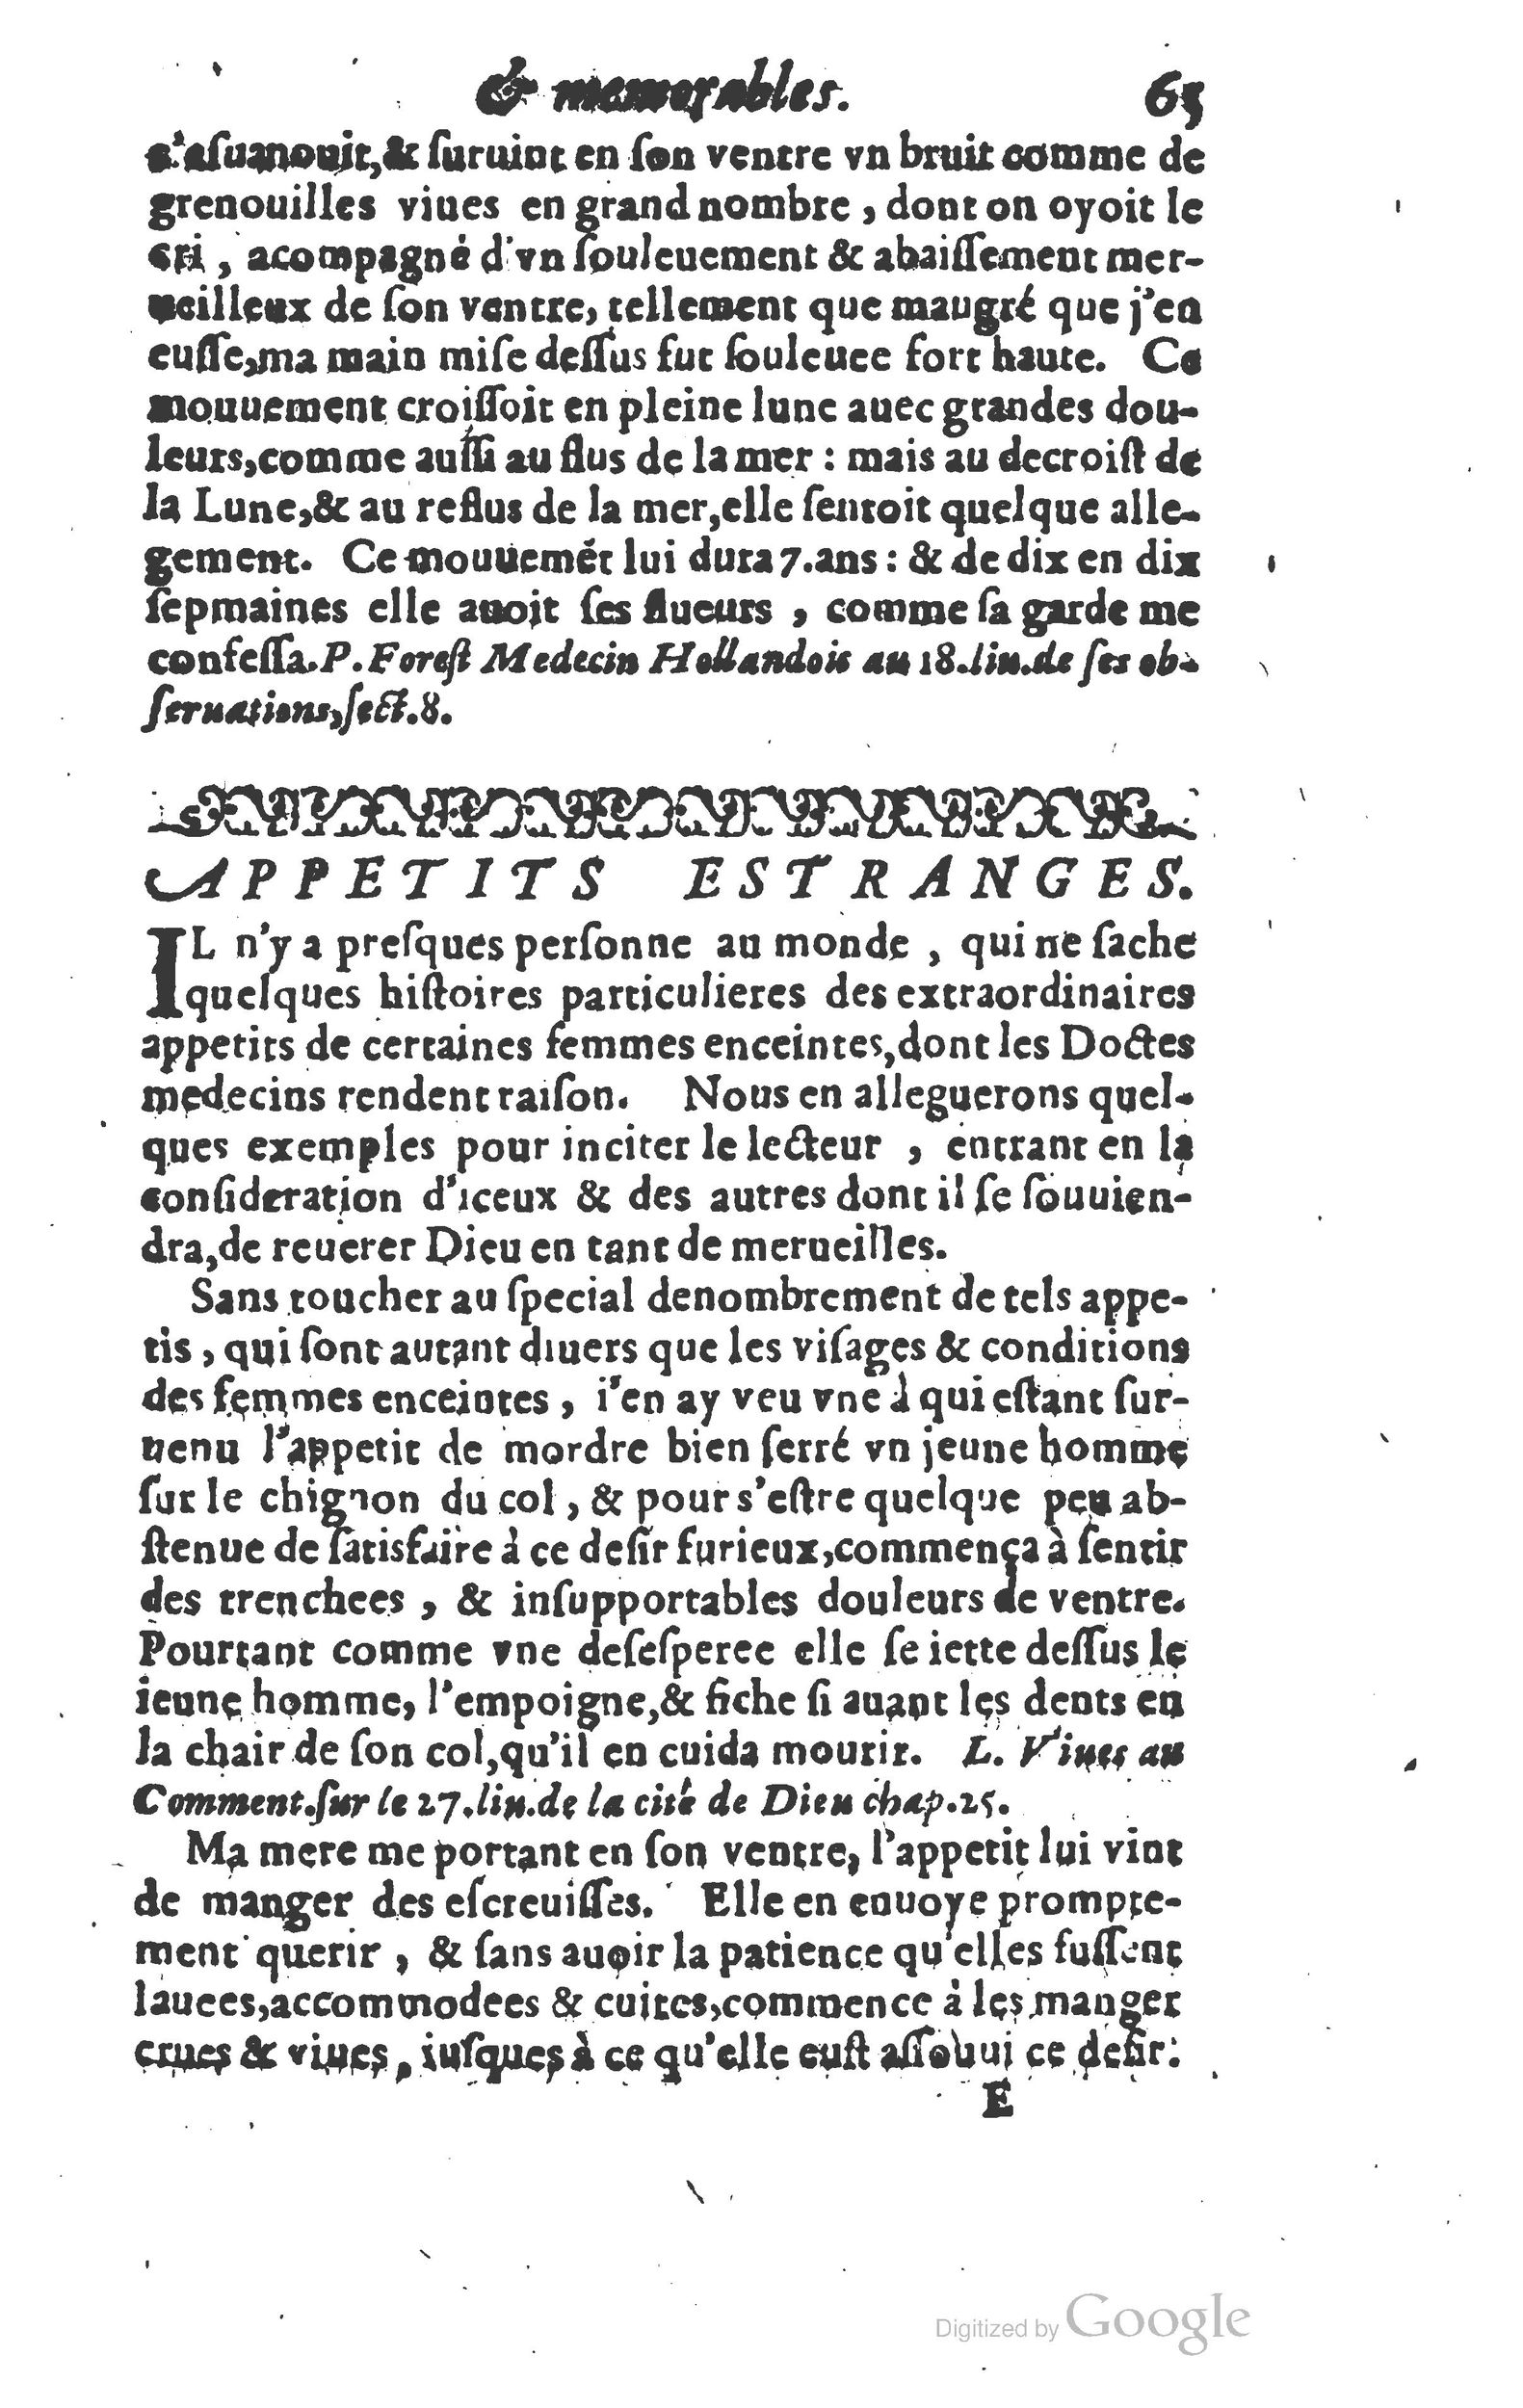 1610 Trésor d’histoires admirables et mémorables de nostre temps Marceau Princeton_Page_0086.jpg